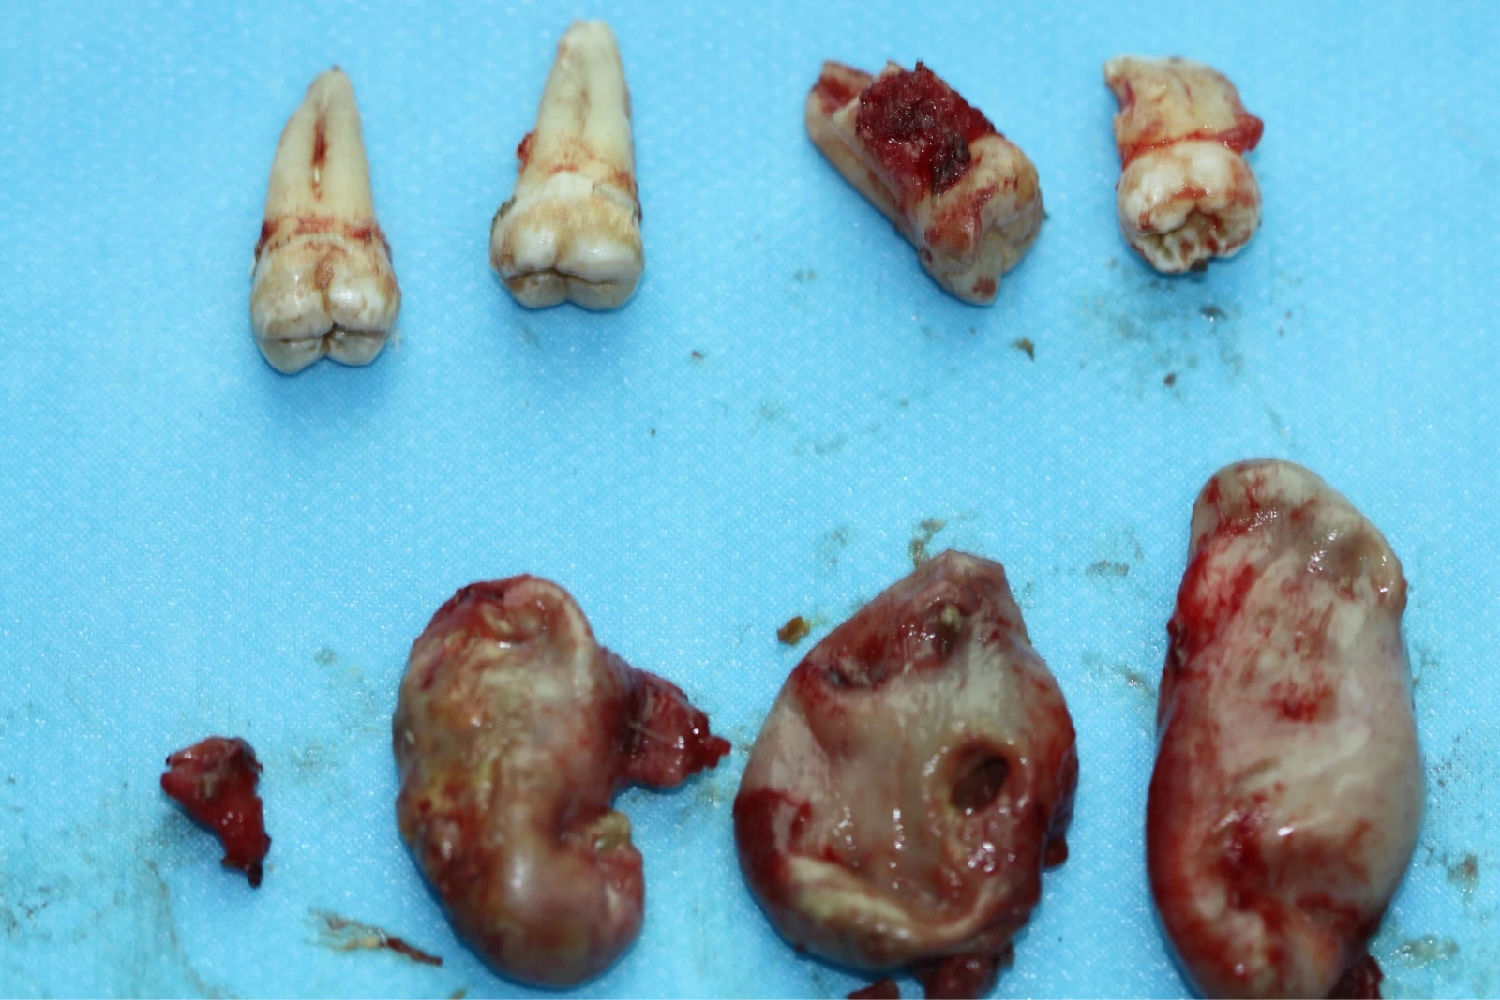 多发性颌骨囊肿综合征一例入院后全麻下手术治疗,左侧下颌骨囊肿较大